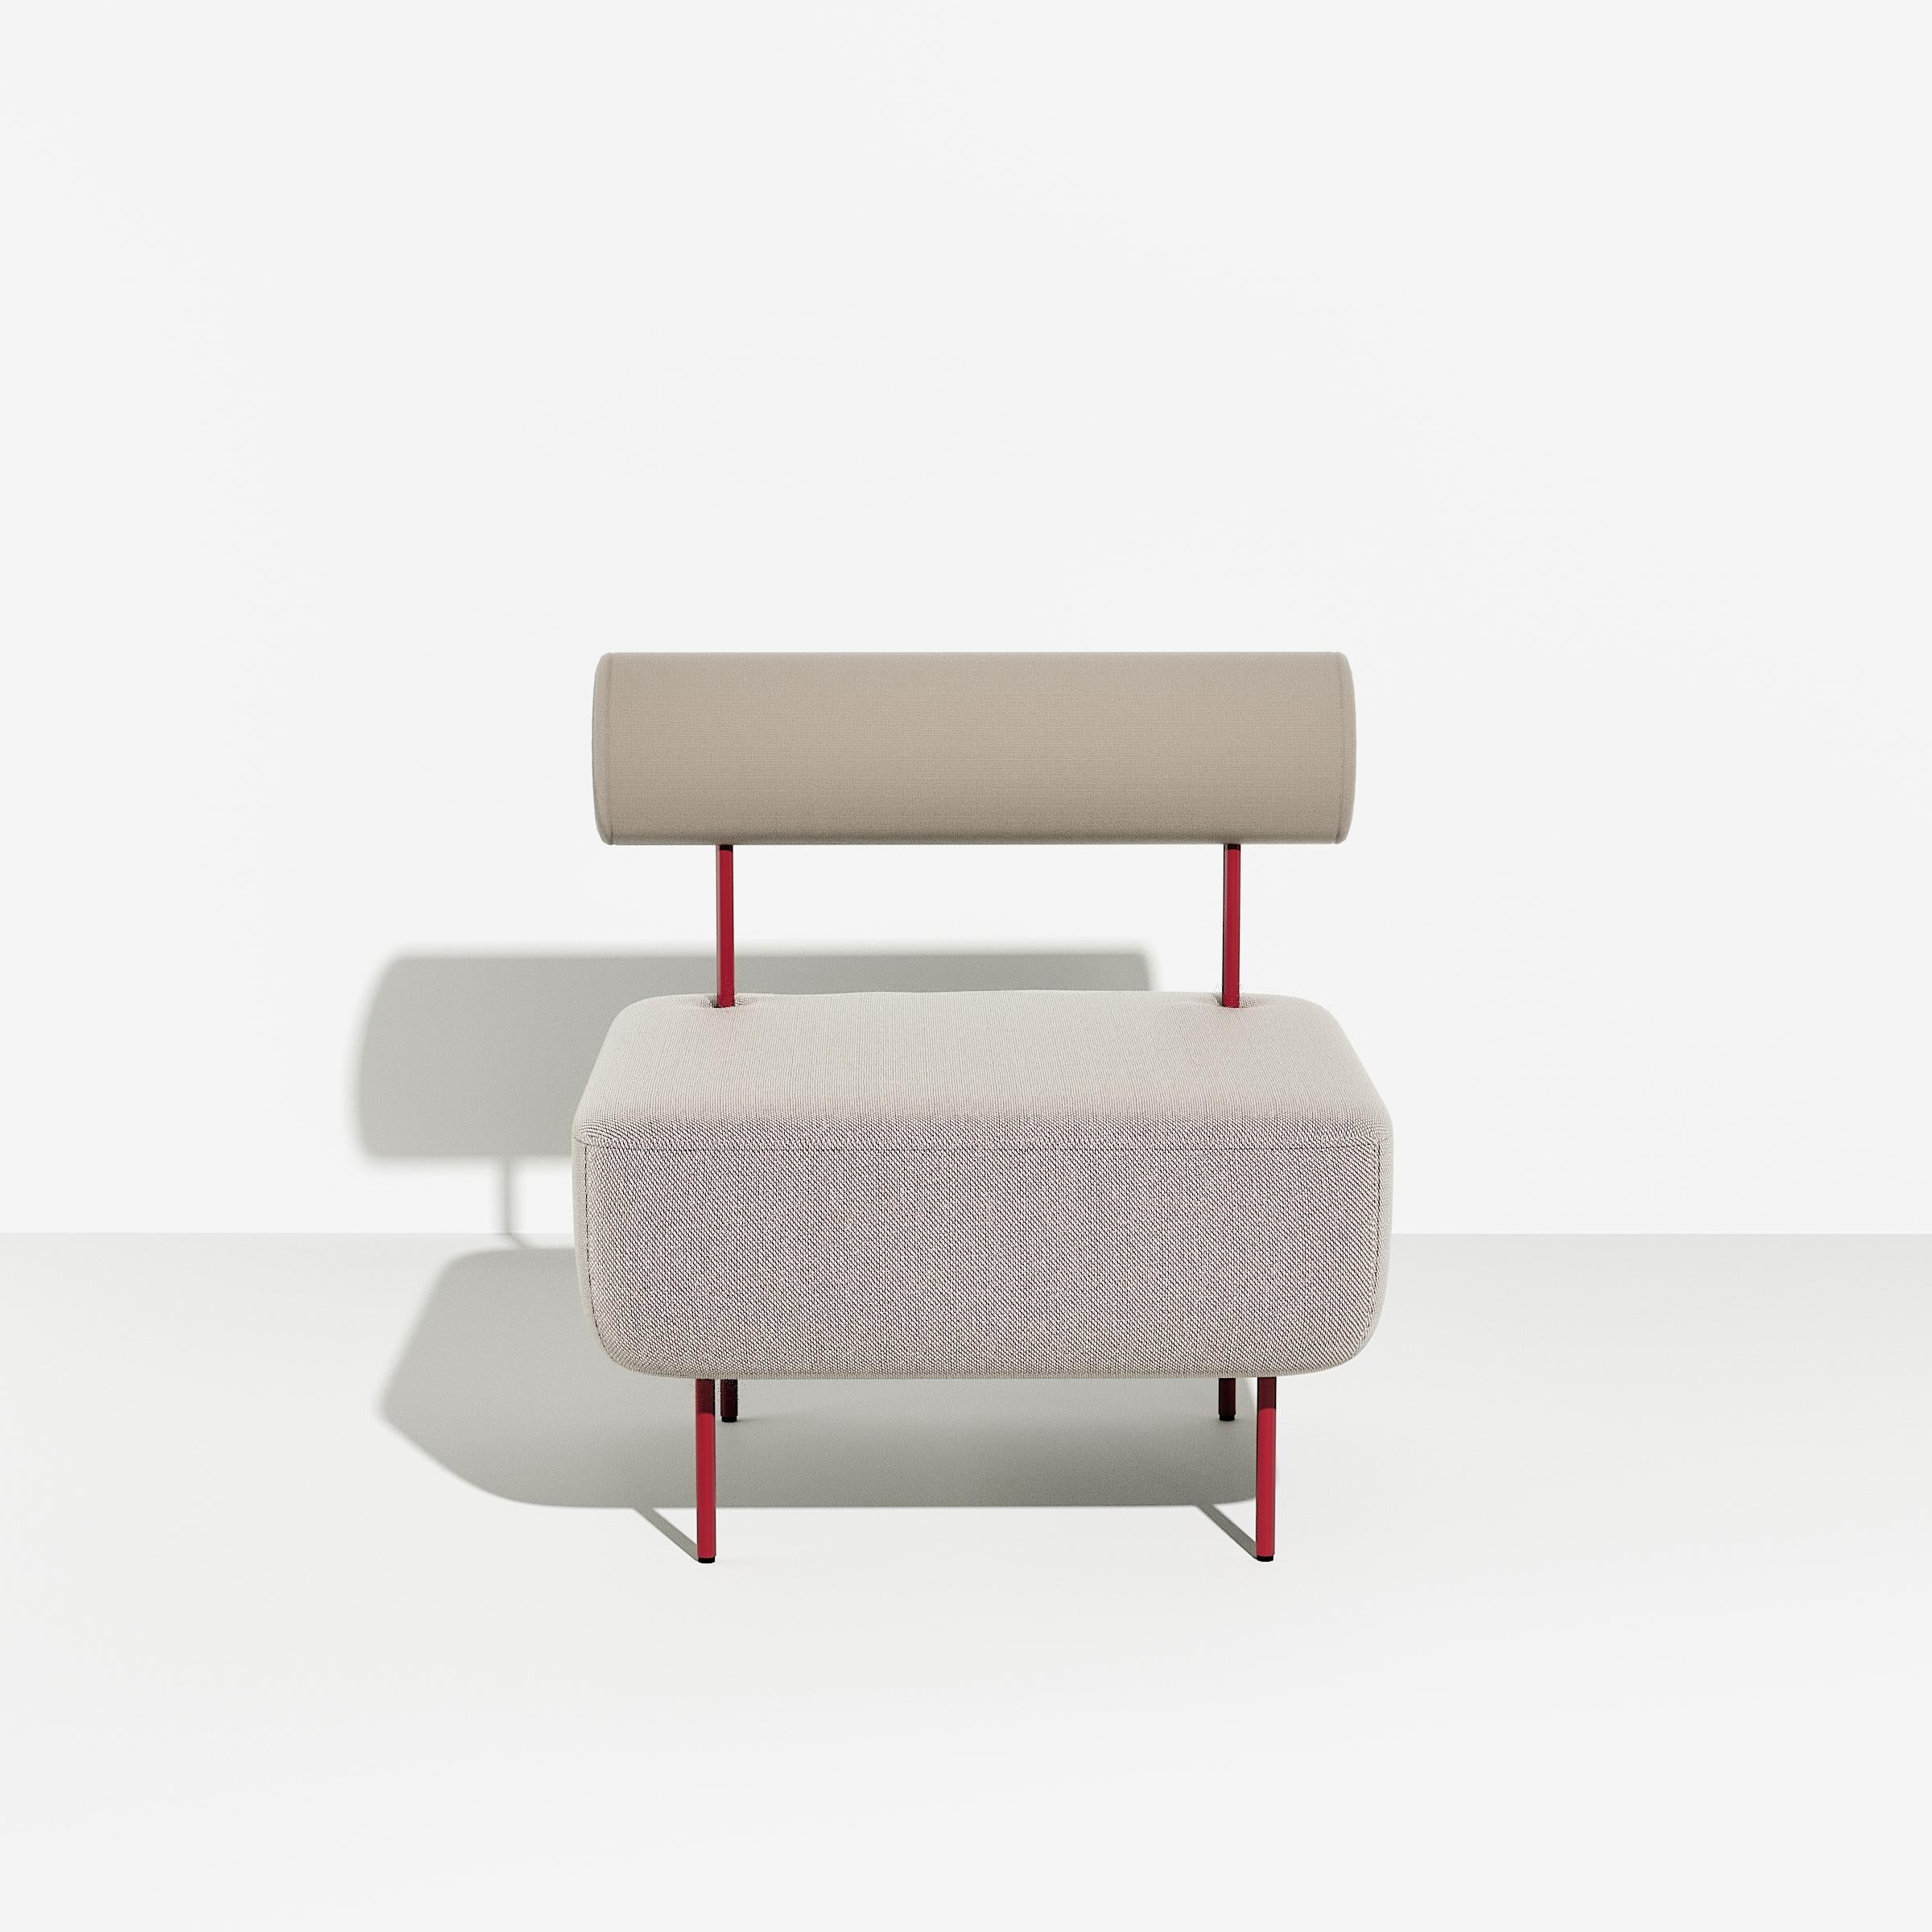 Petite Friture Medium Hoff Armchair in Grey-beige by Morten & Jona, 2015

Hoff, créée par le duo de designers Morten & Jonas, est une collection de deux tabourets et de deux fauteuils modulaires. Ils peuvent être combinés pour former un canapé